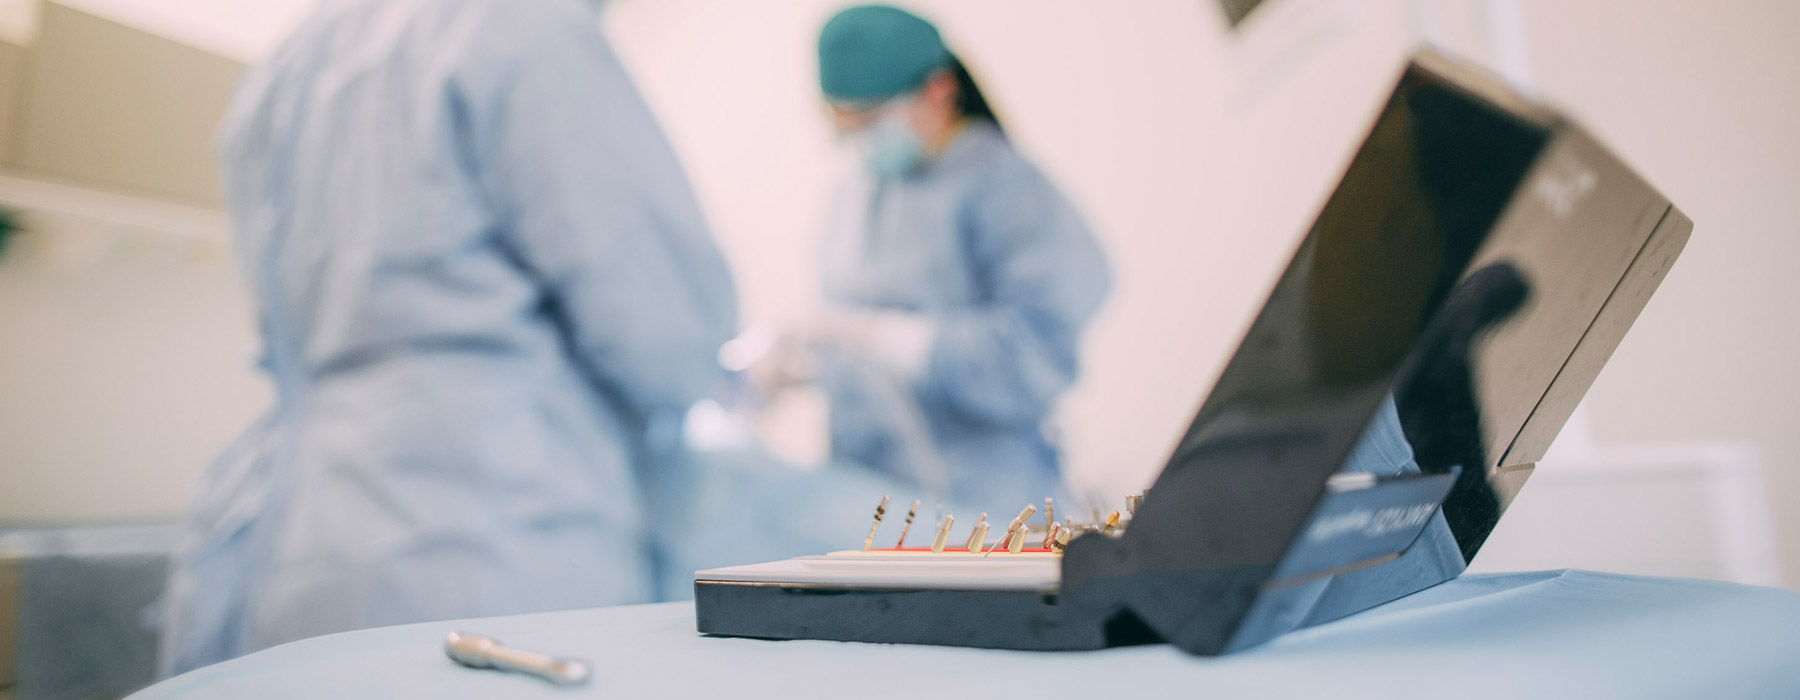 Kieferknochenaufbau für Implantate Frankfurt-Sachsenhausen – das sind die Möglichkeiten